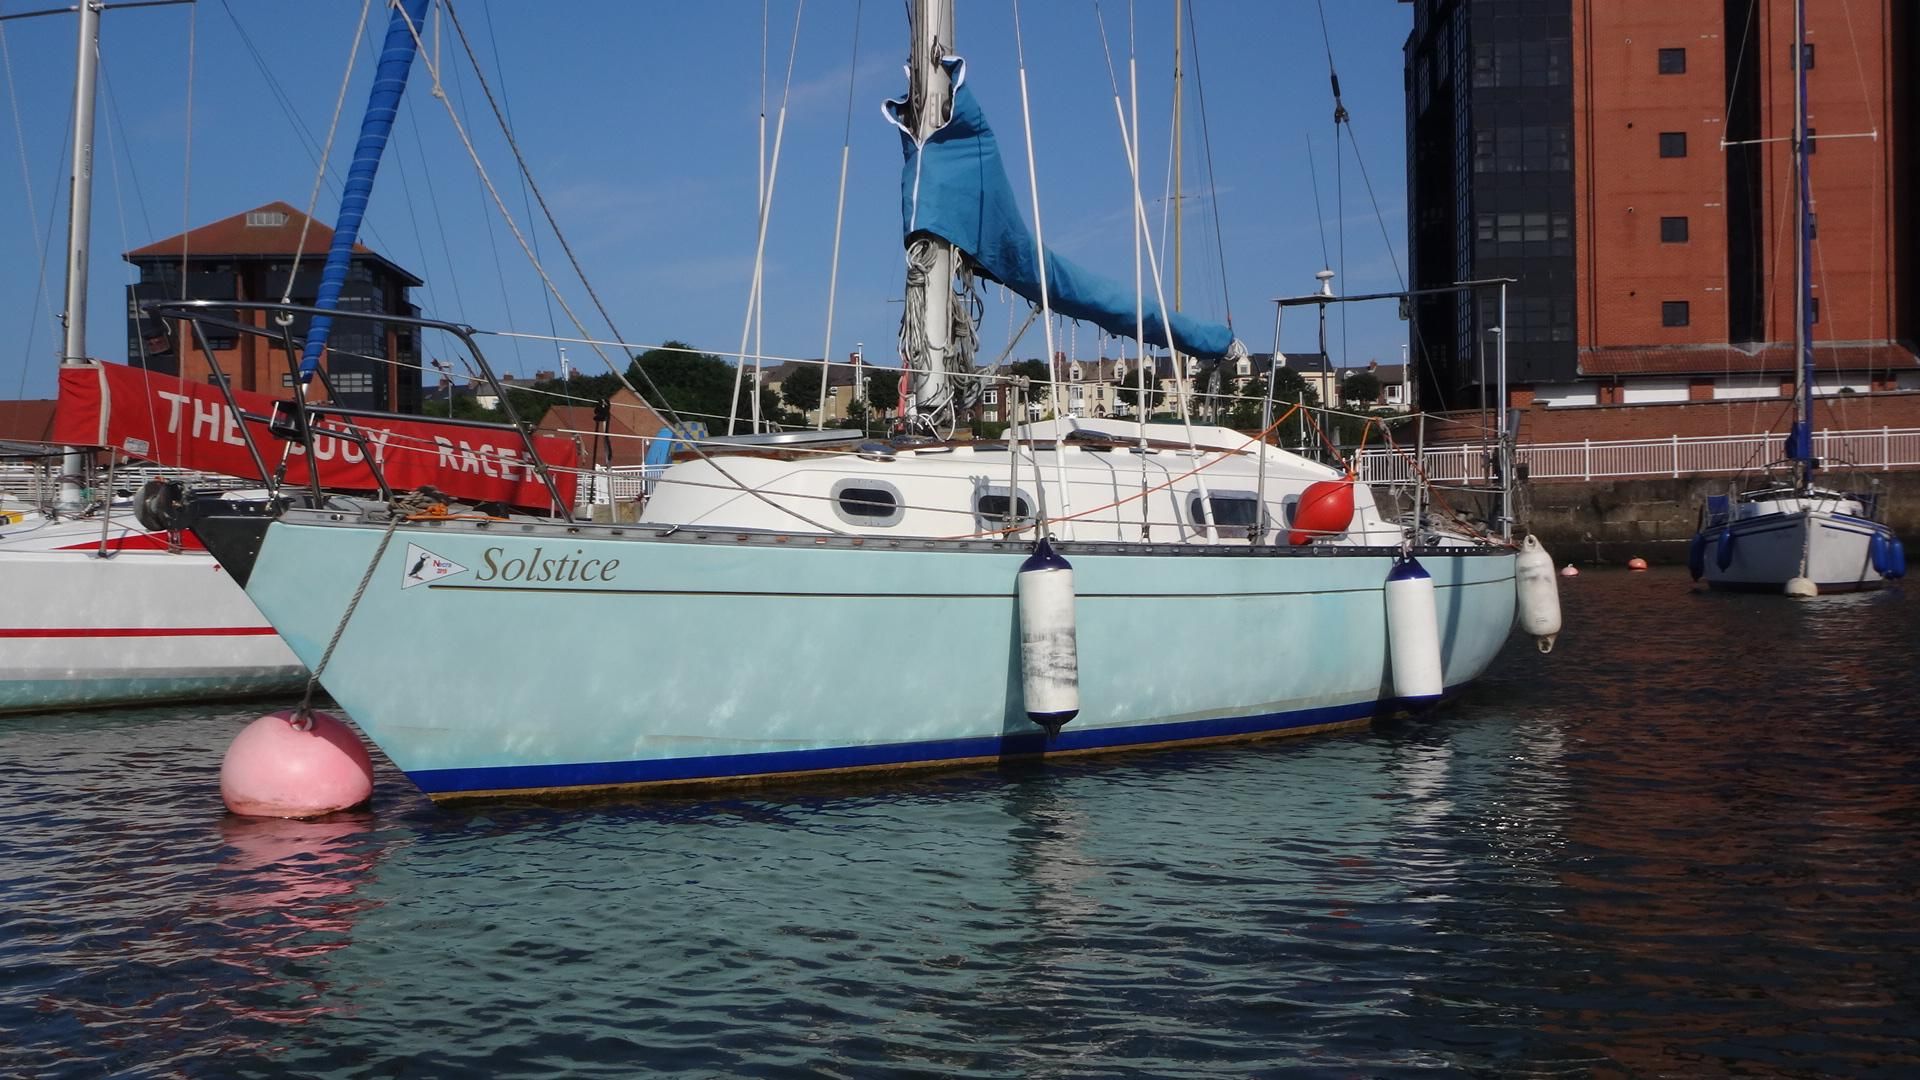 elizabethan yachts for sale uk